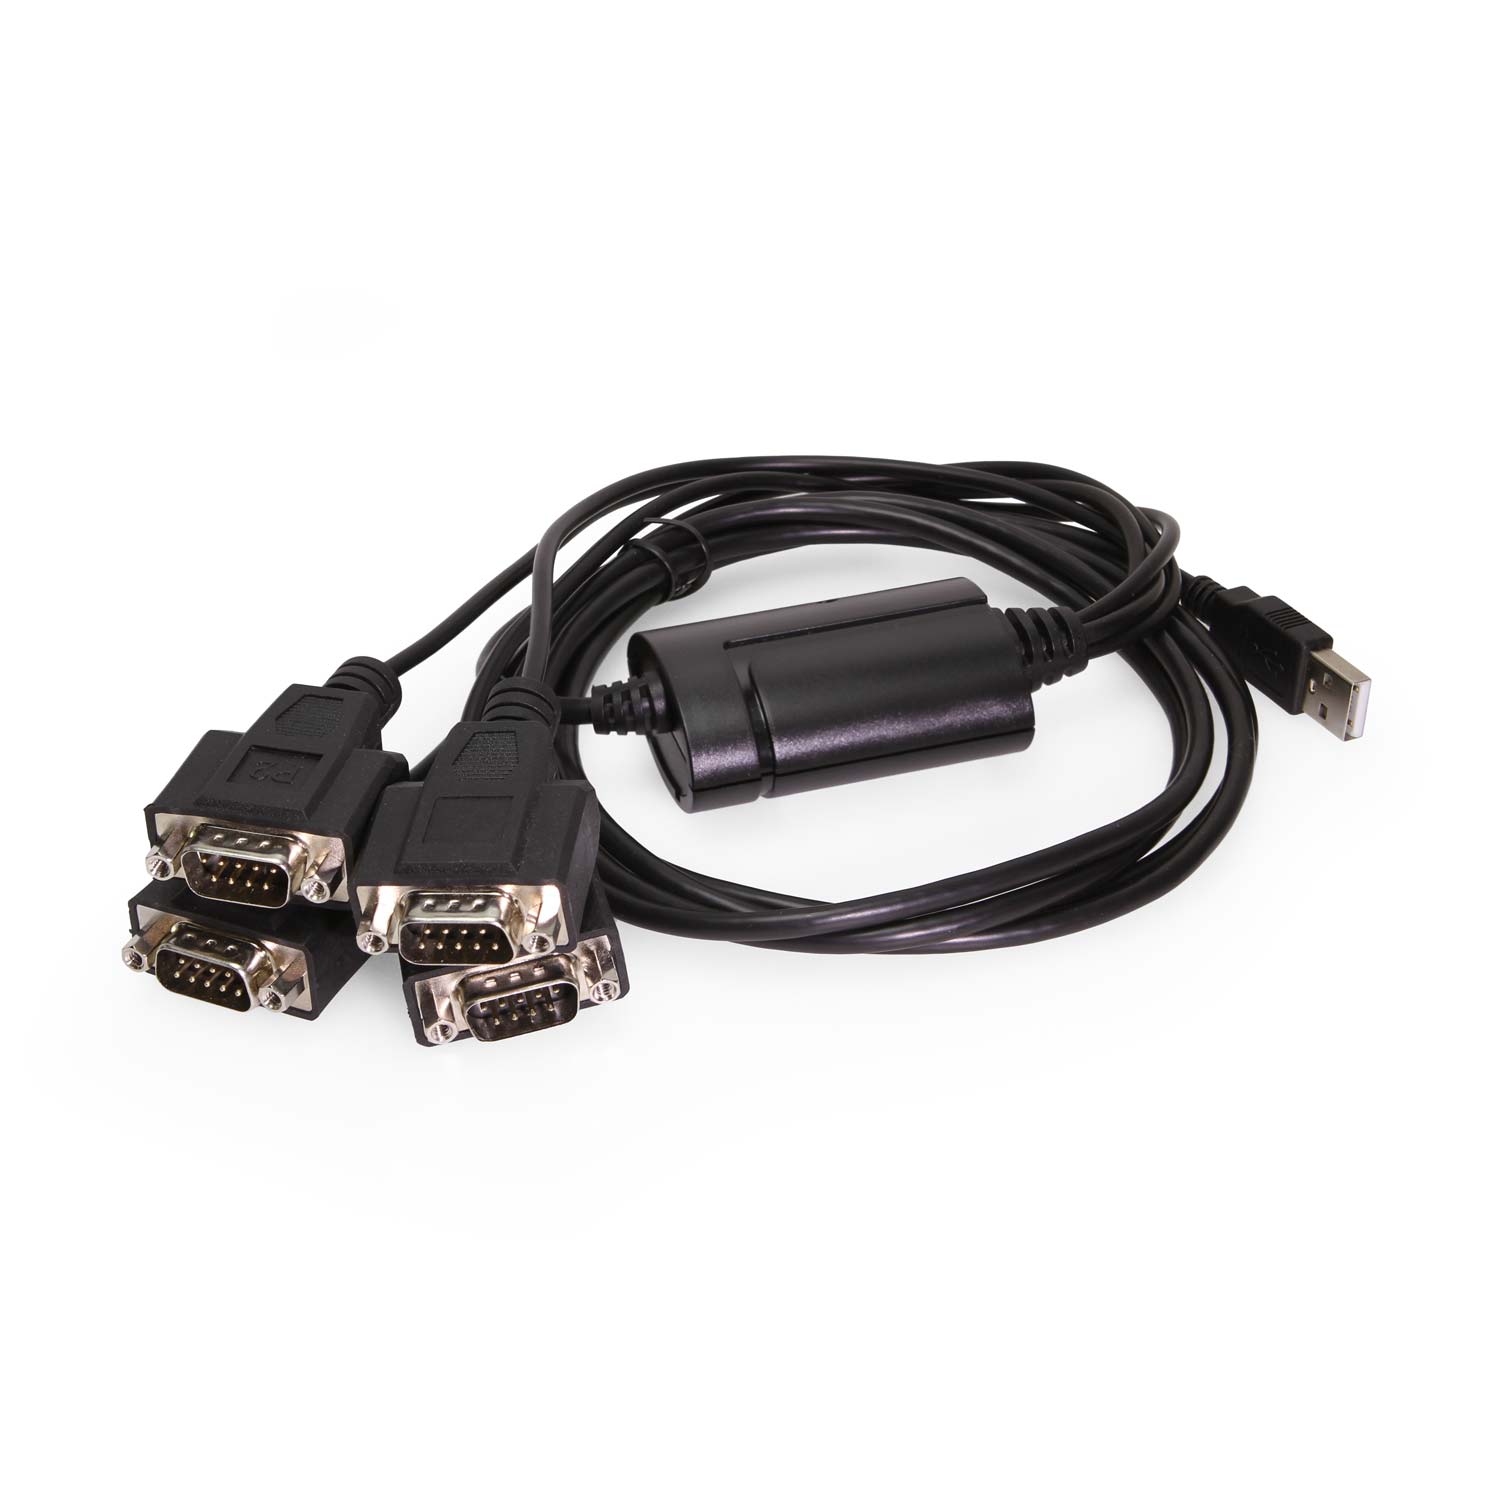 Serieller USB-RS232-Adapter von FTDI mit 4 Anschlüssen, DIN